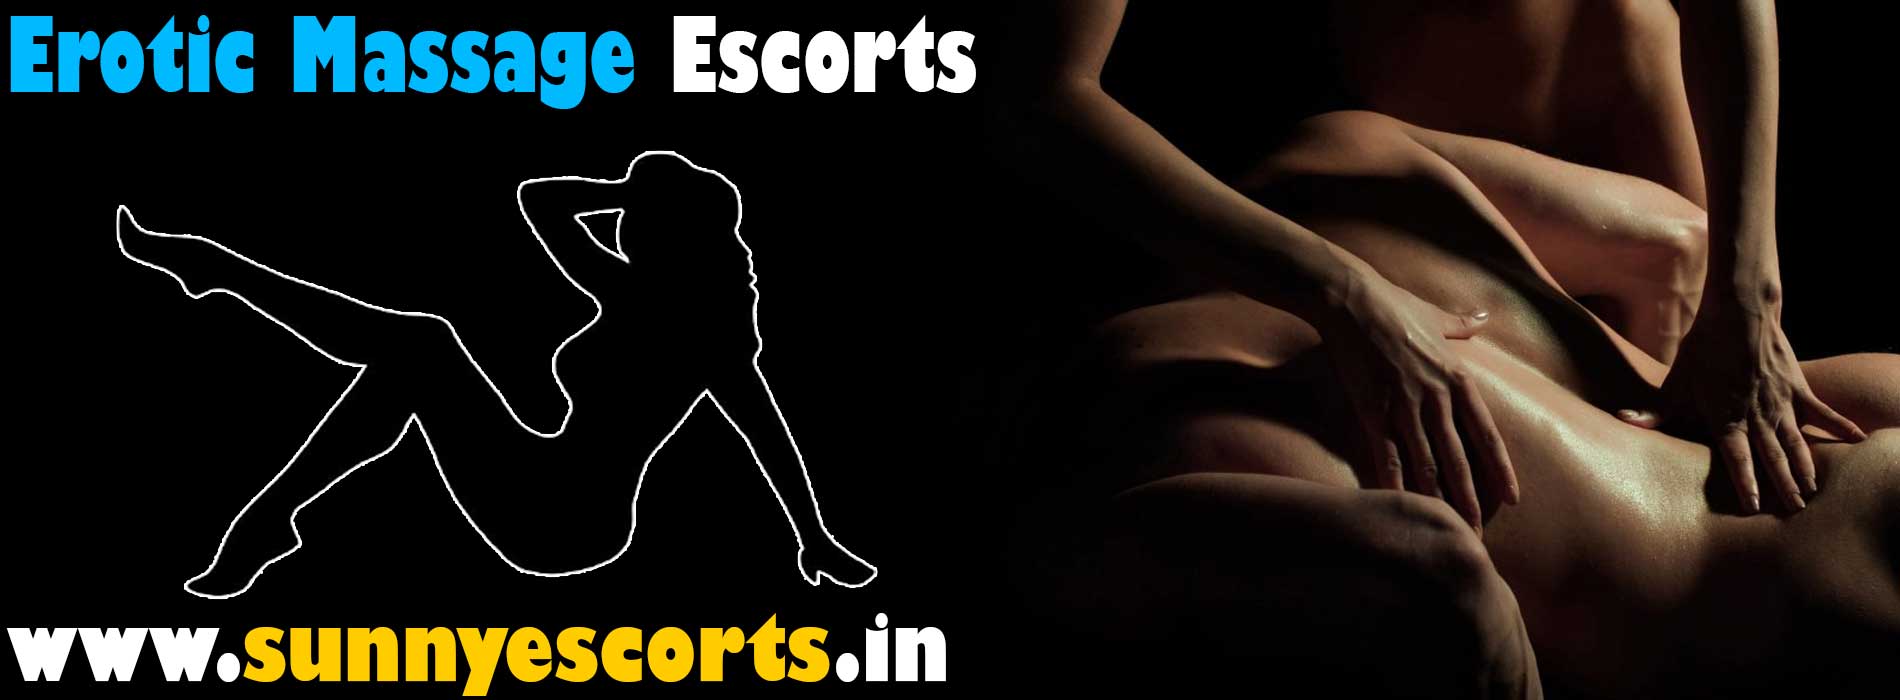 Erotic Massage Call Girls in Bangalore